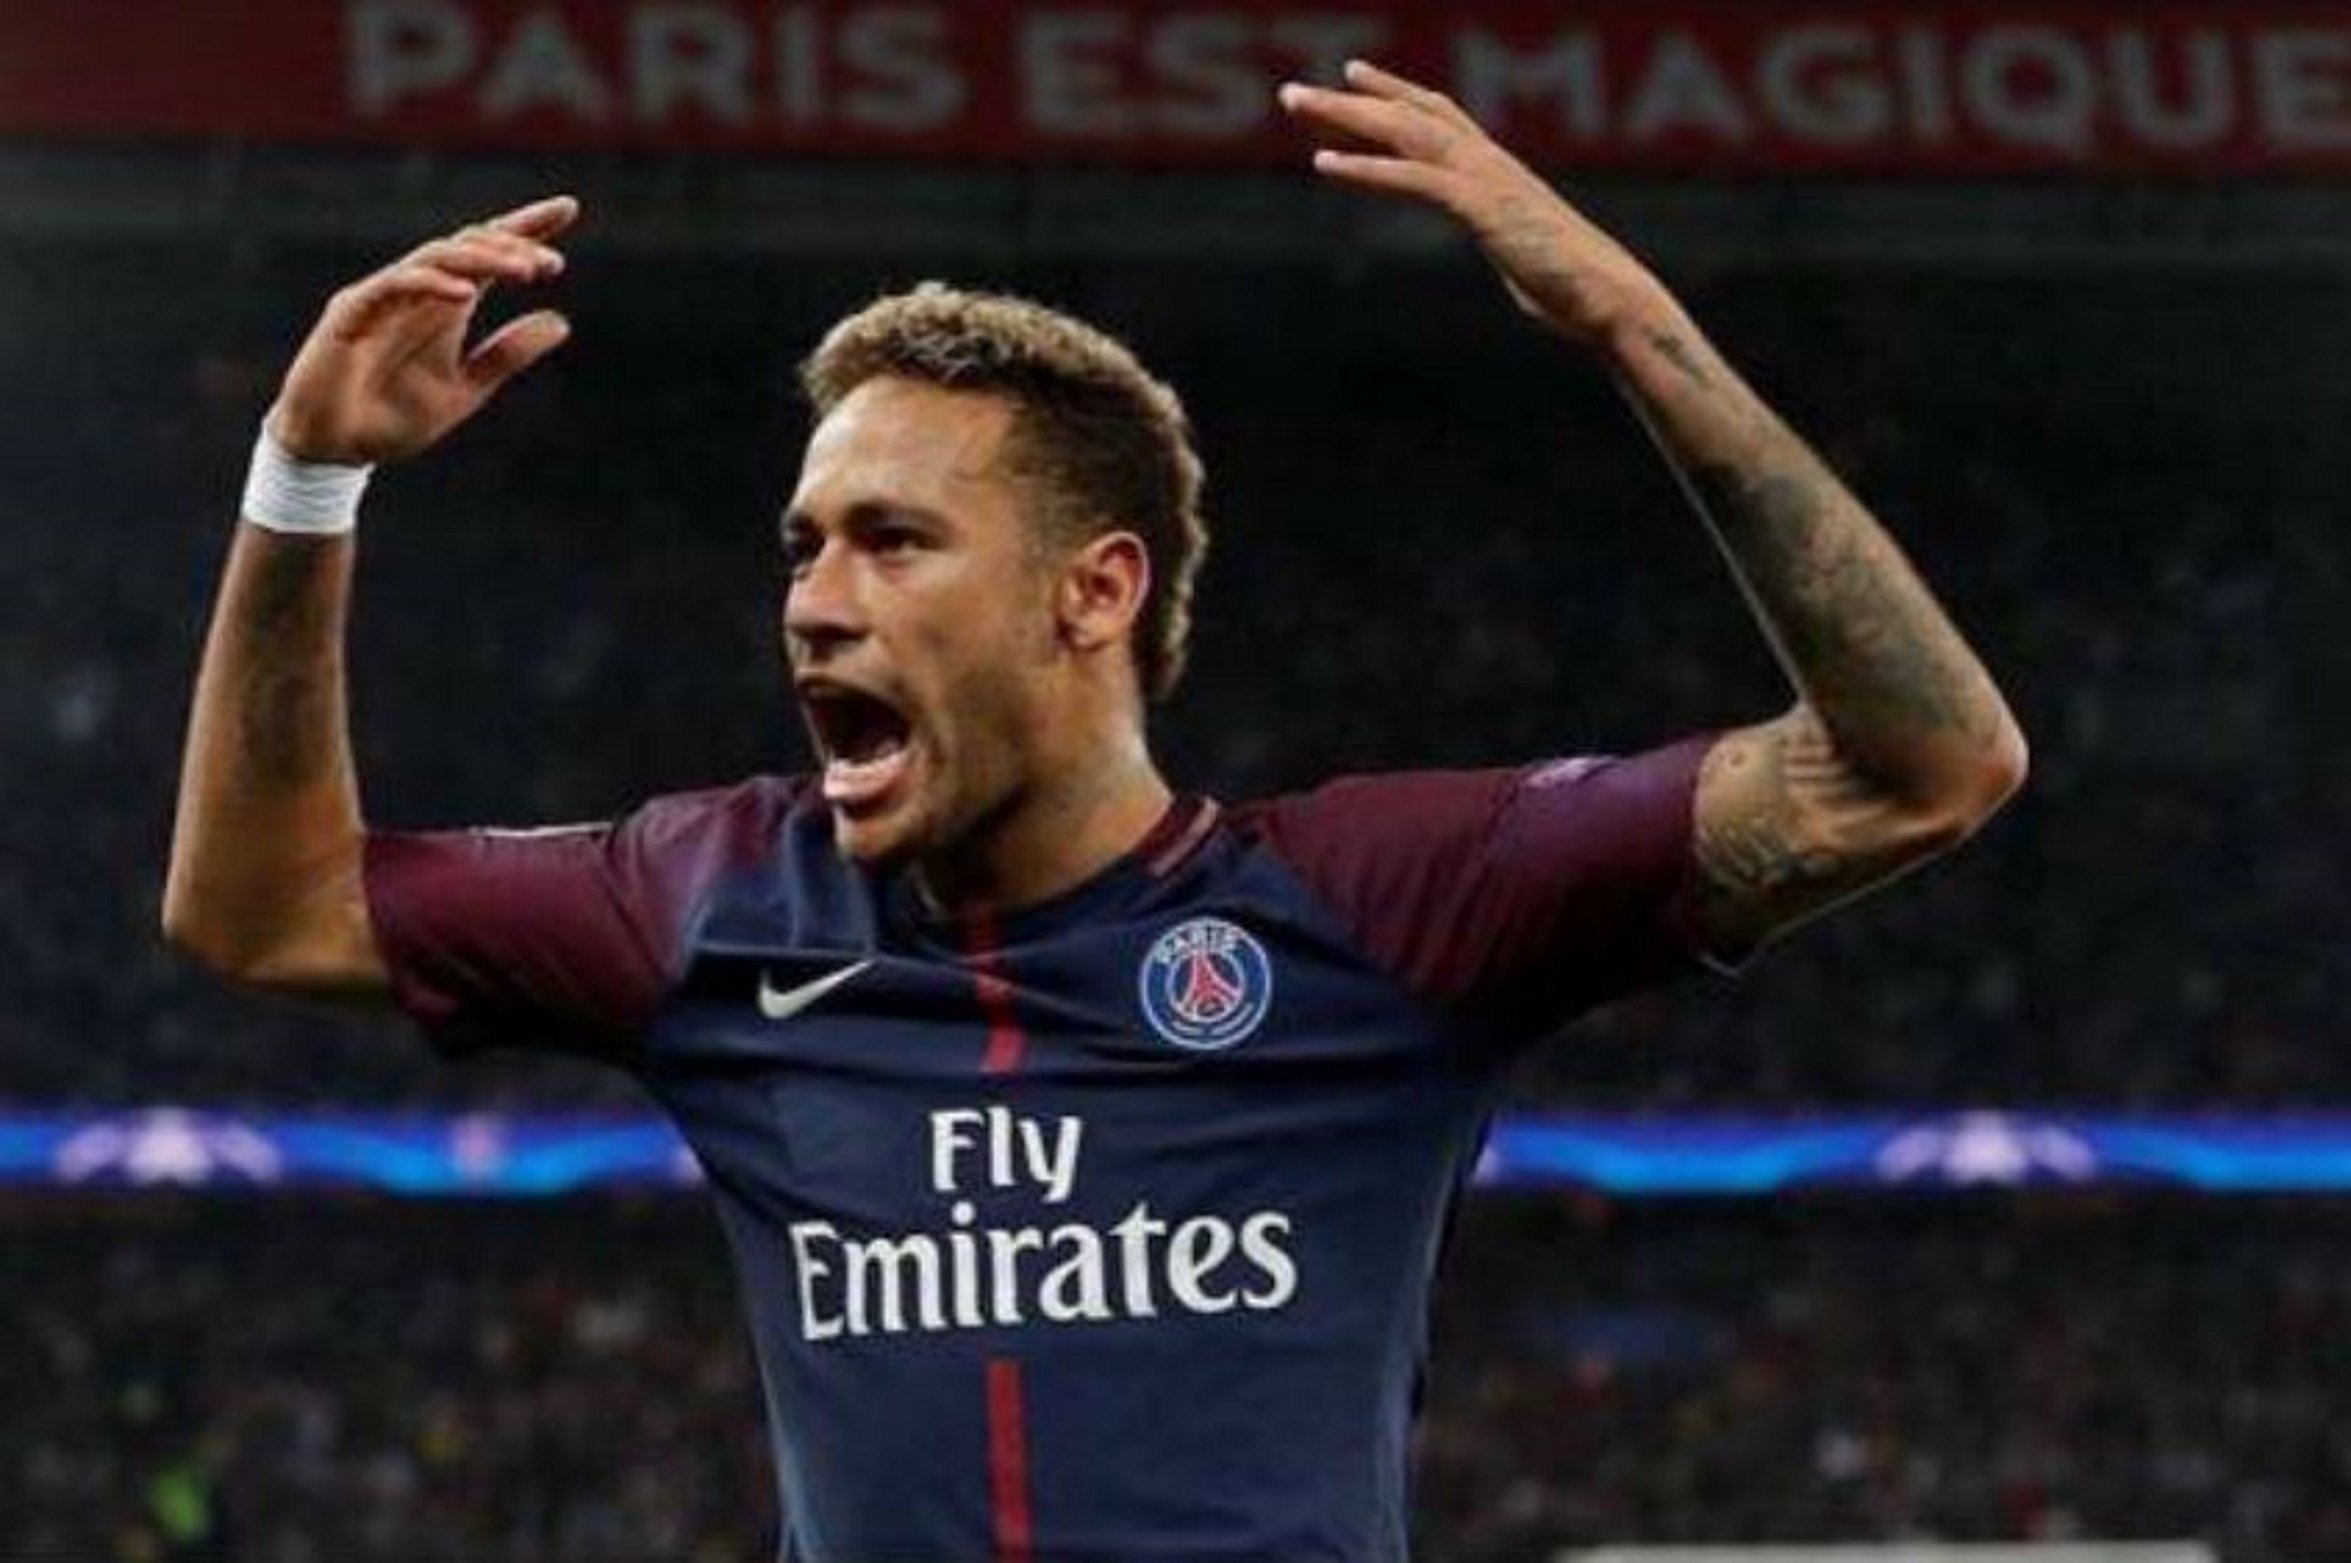 La red hierve con la denuncia del aficionado agredido por Neymar: "Estoy amenazado"